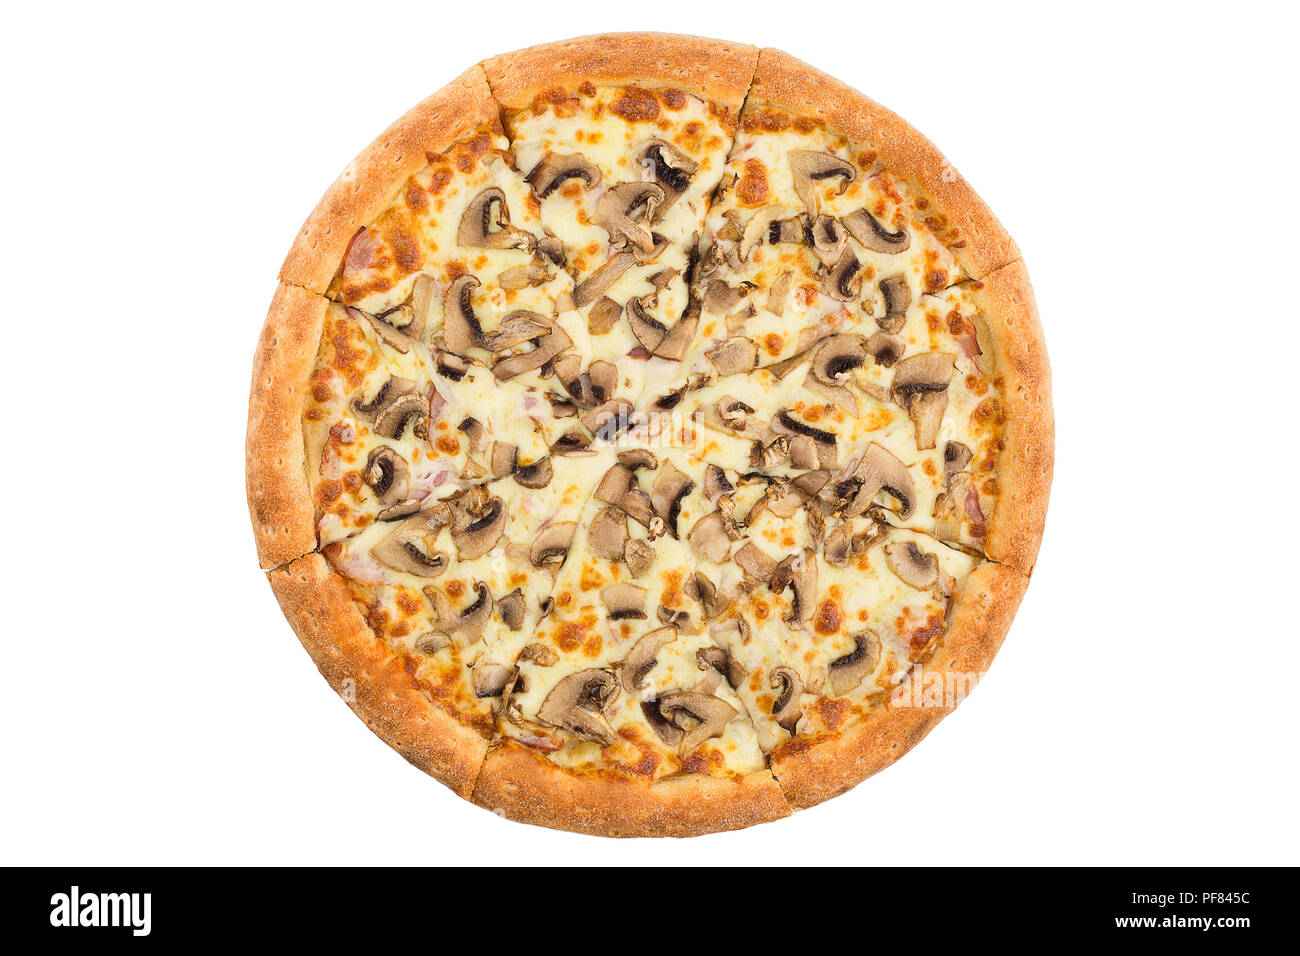 грибная пицца с шампиньонами как в пиццерии фото 114